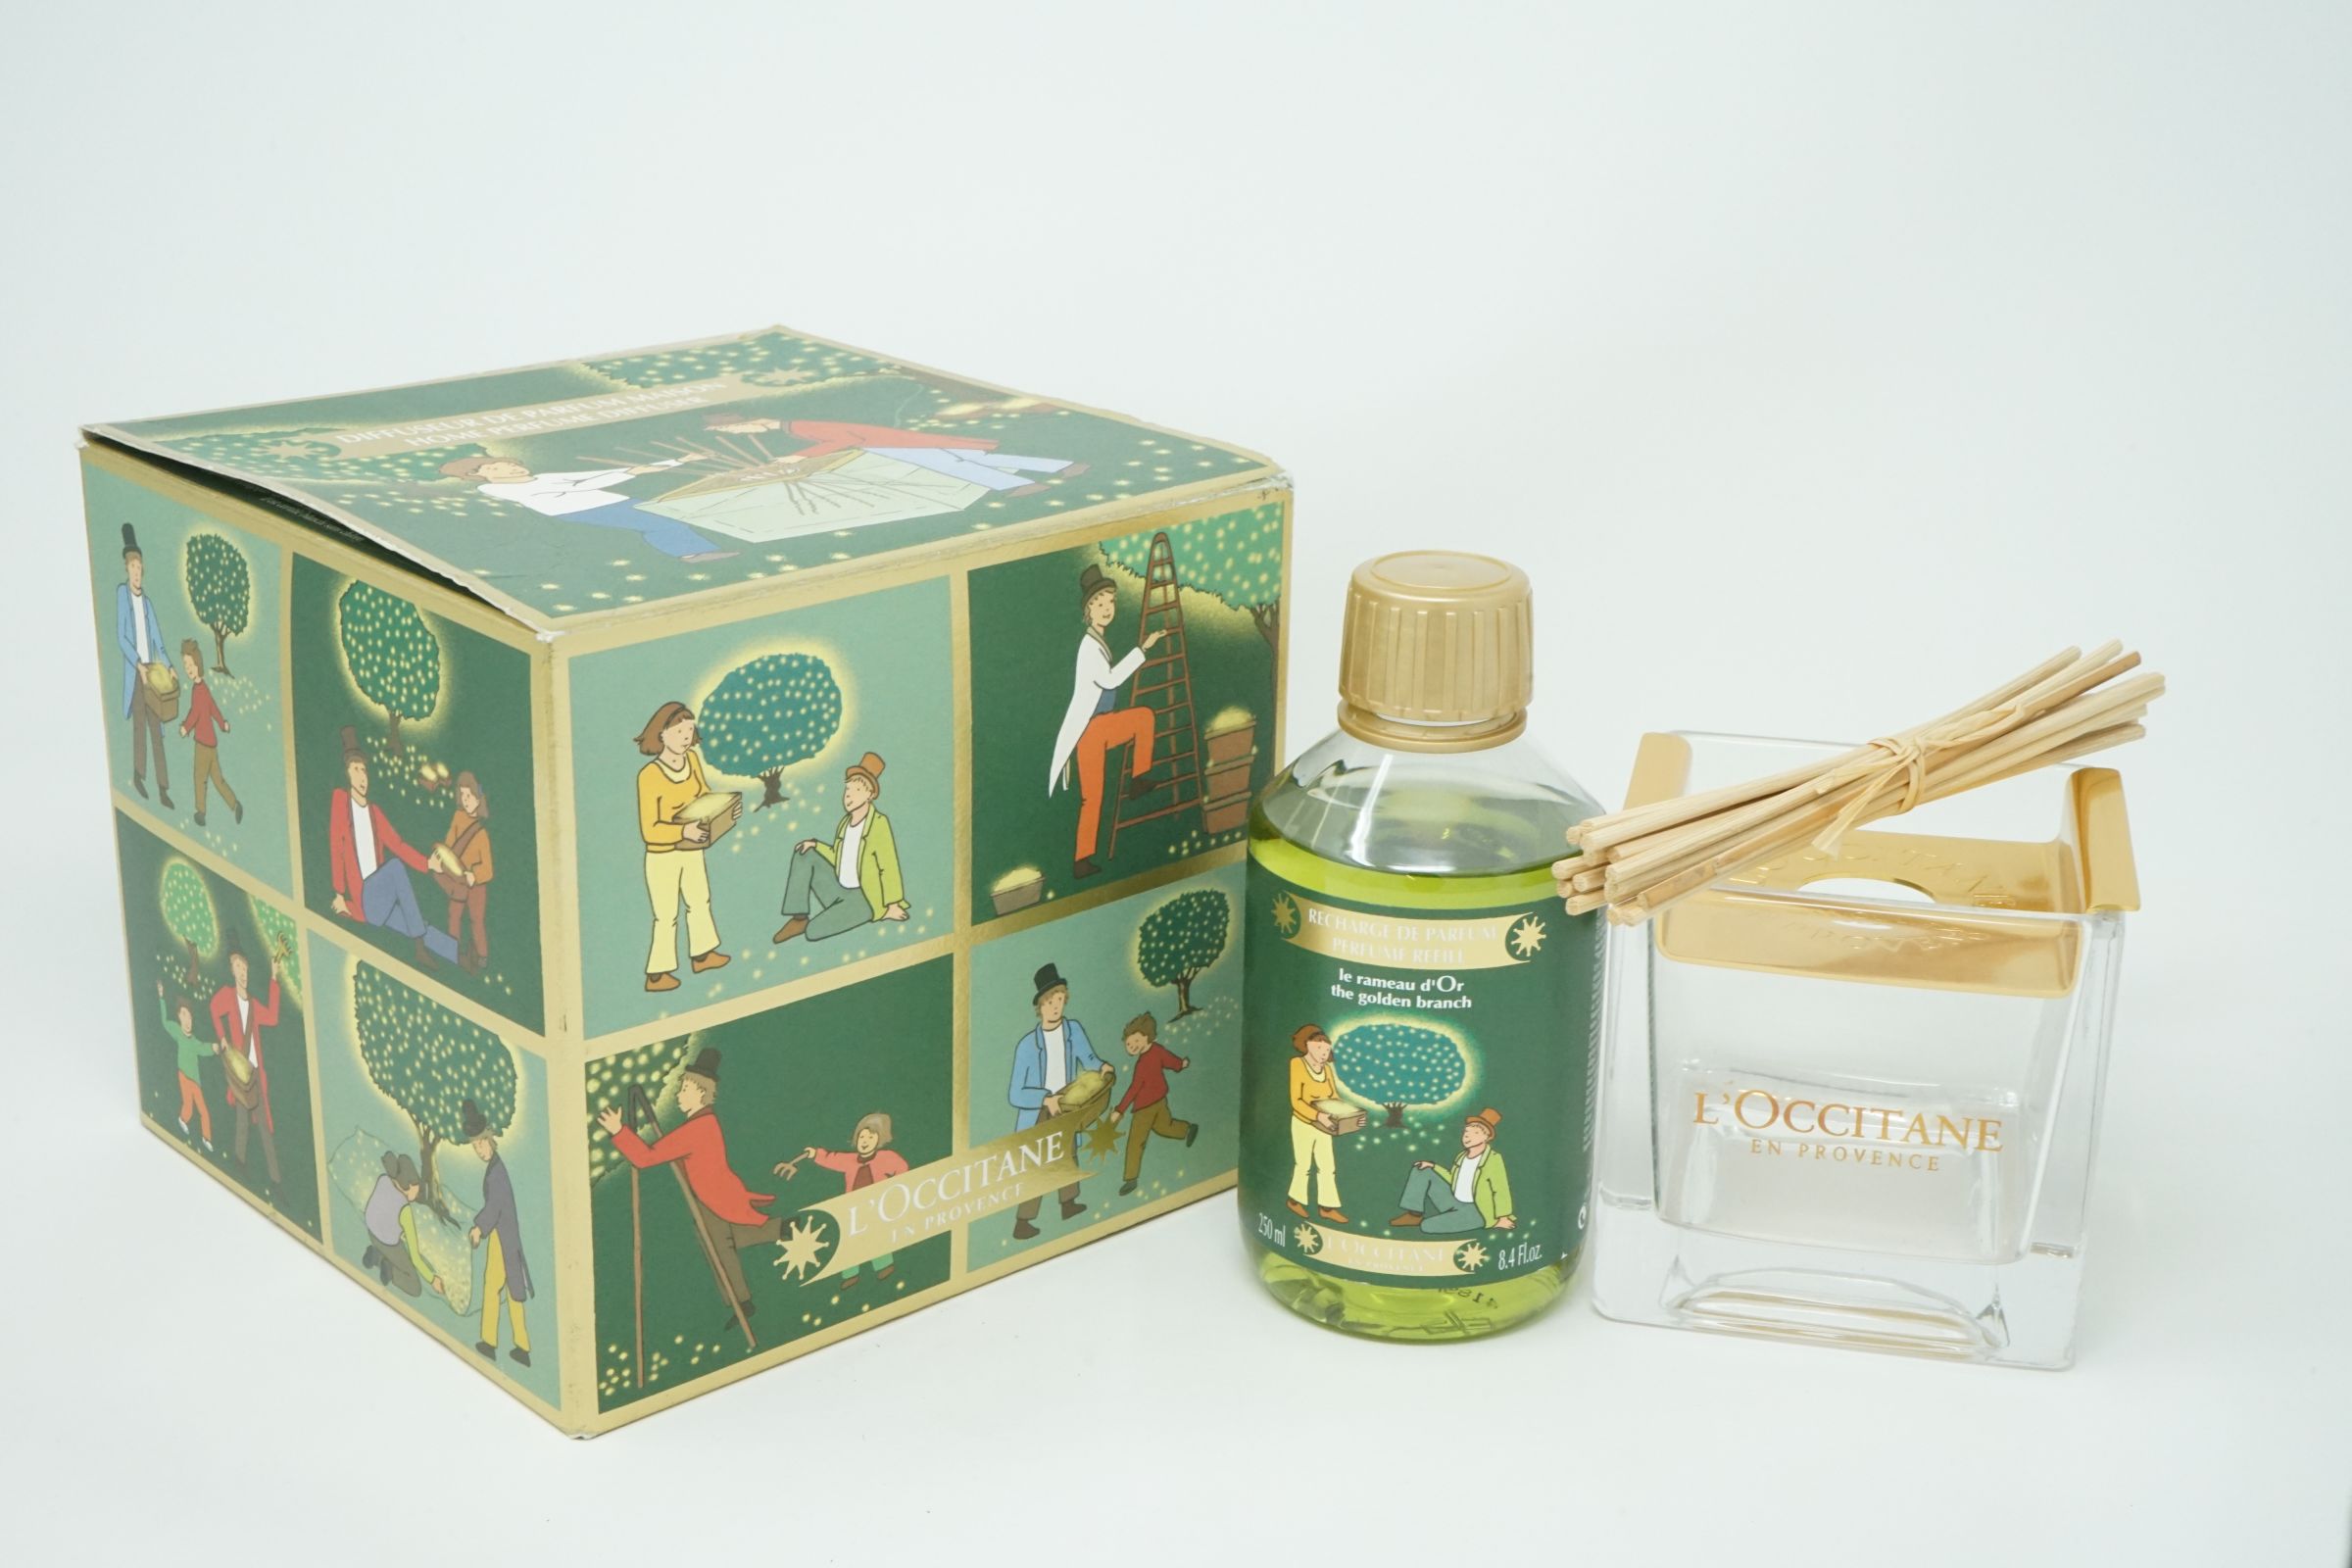 L'Occitane Diffuseur de Parfum Maison Raumduft